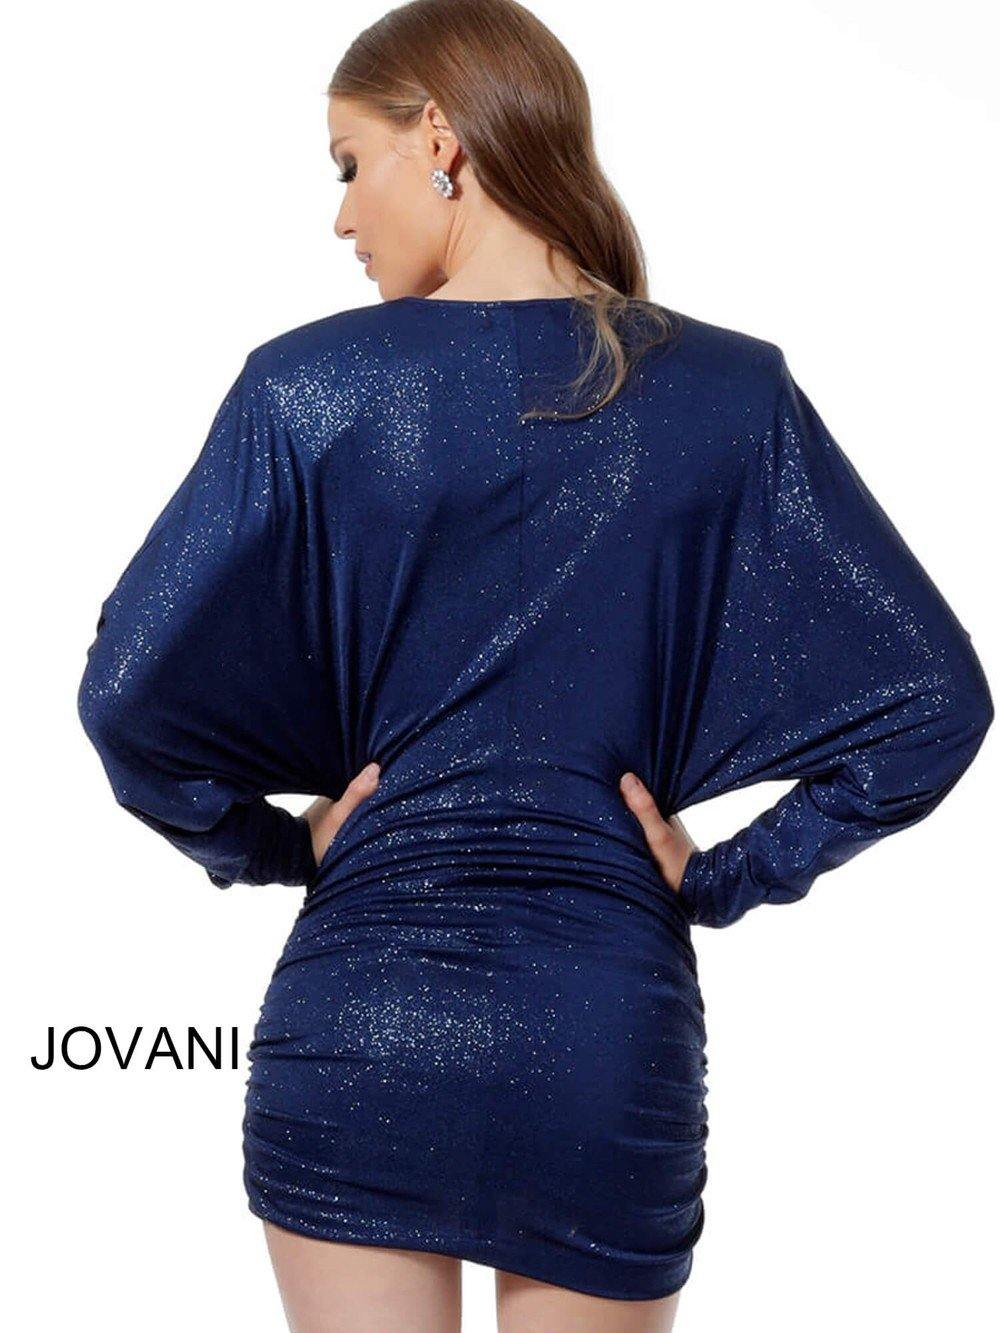 Jovani Short Formal Dress JVN1696 - The Dress Outlet